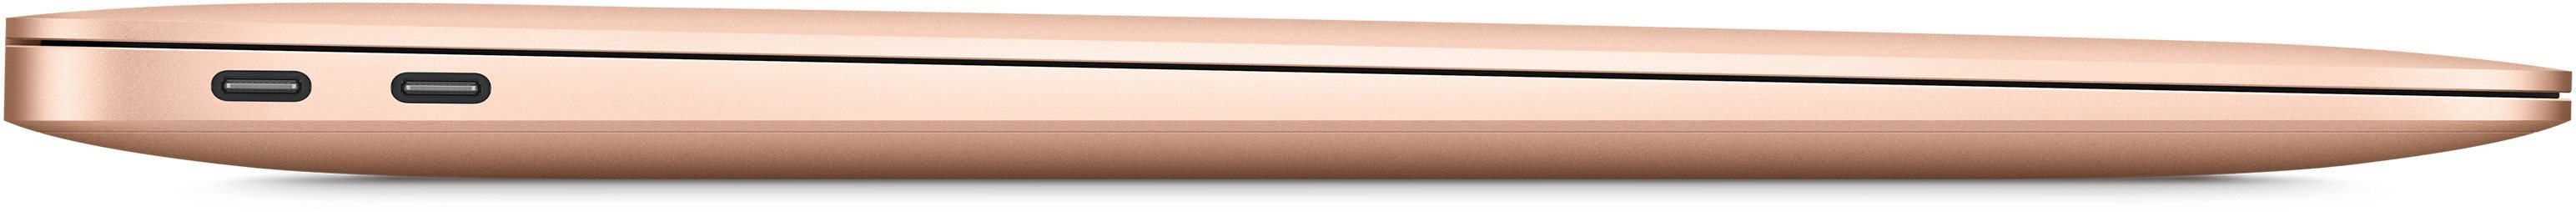 MacBook Air (2020) je velice tenký